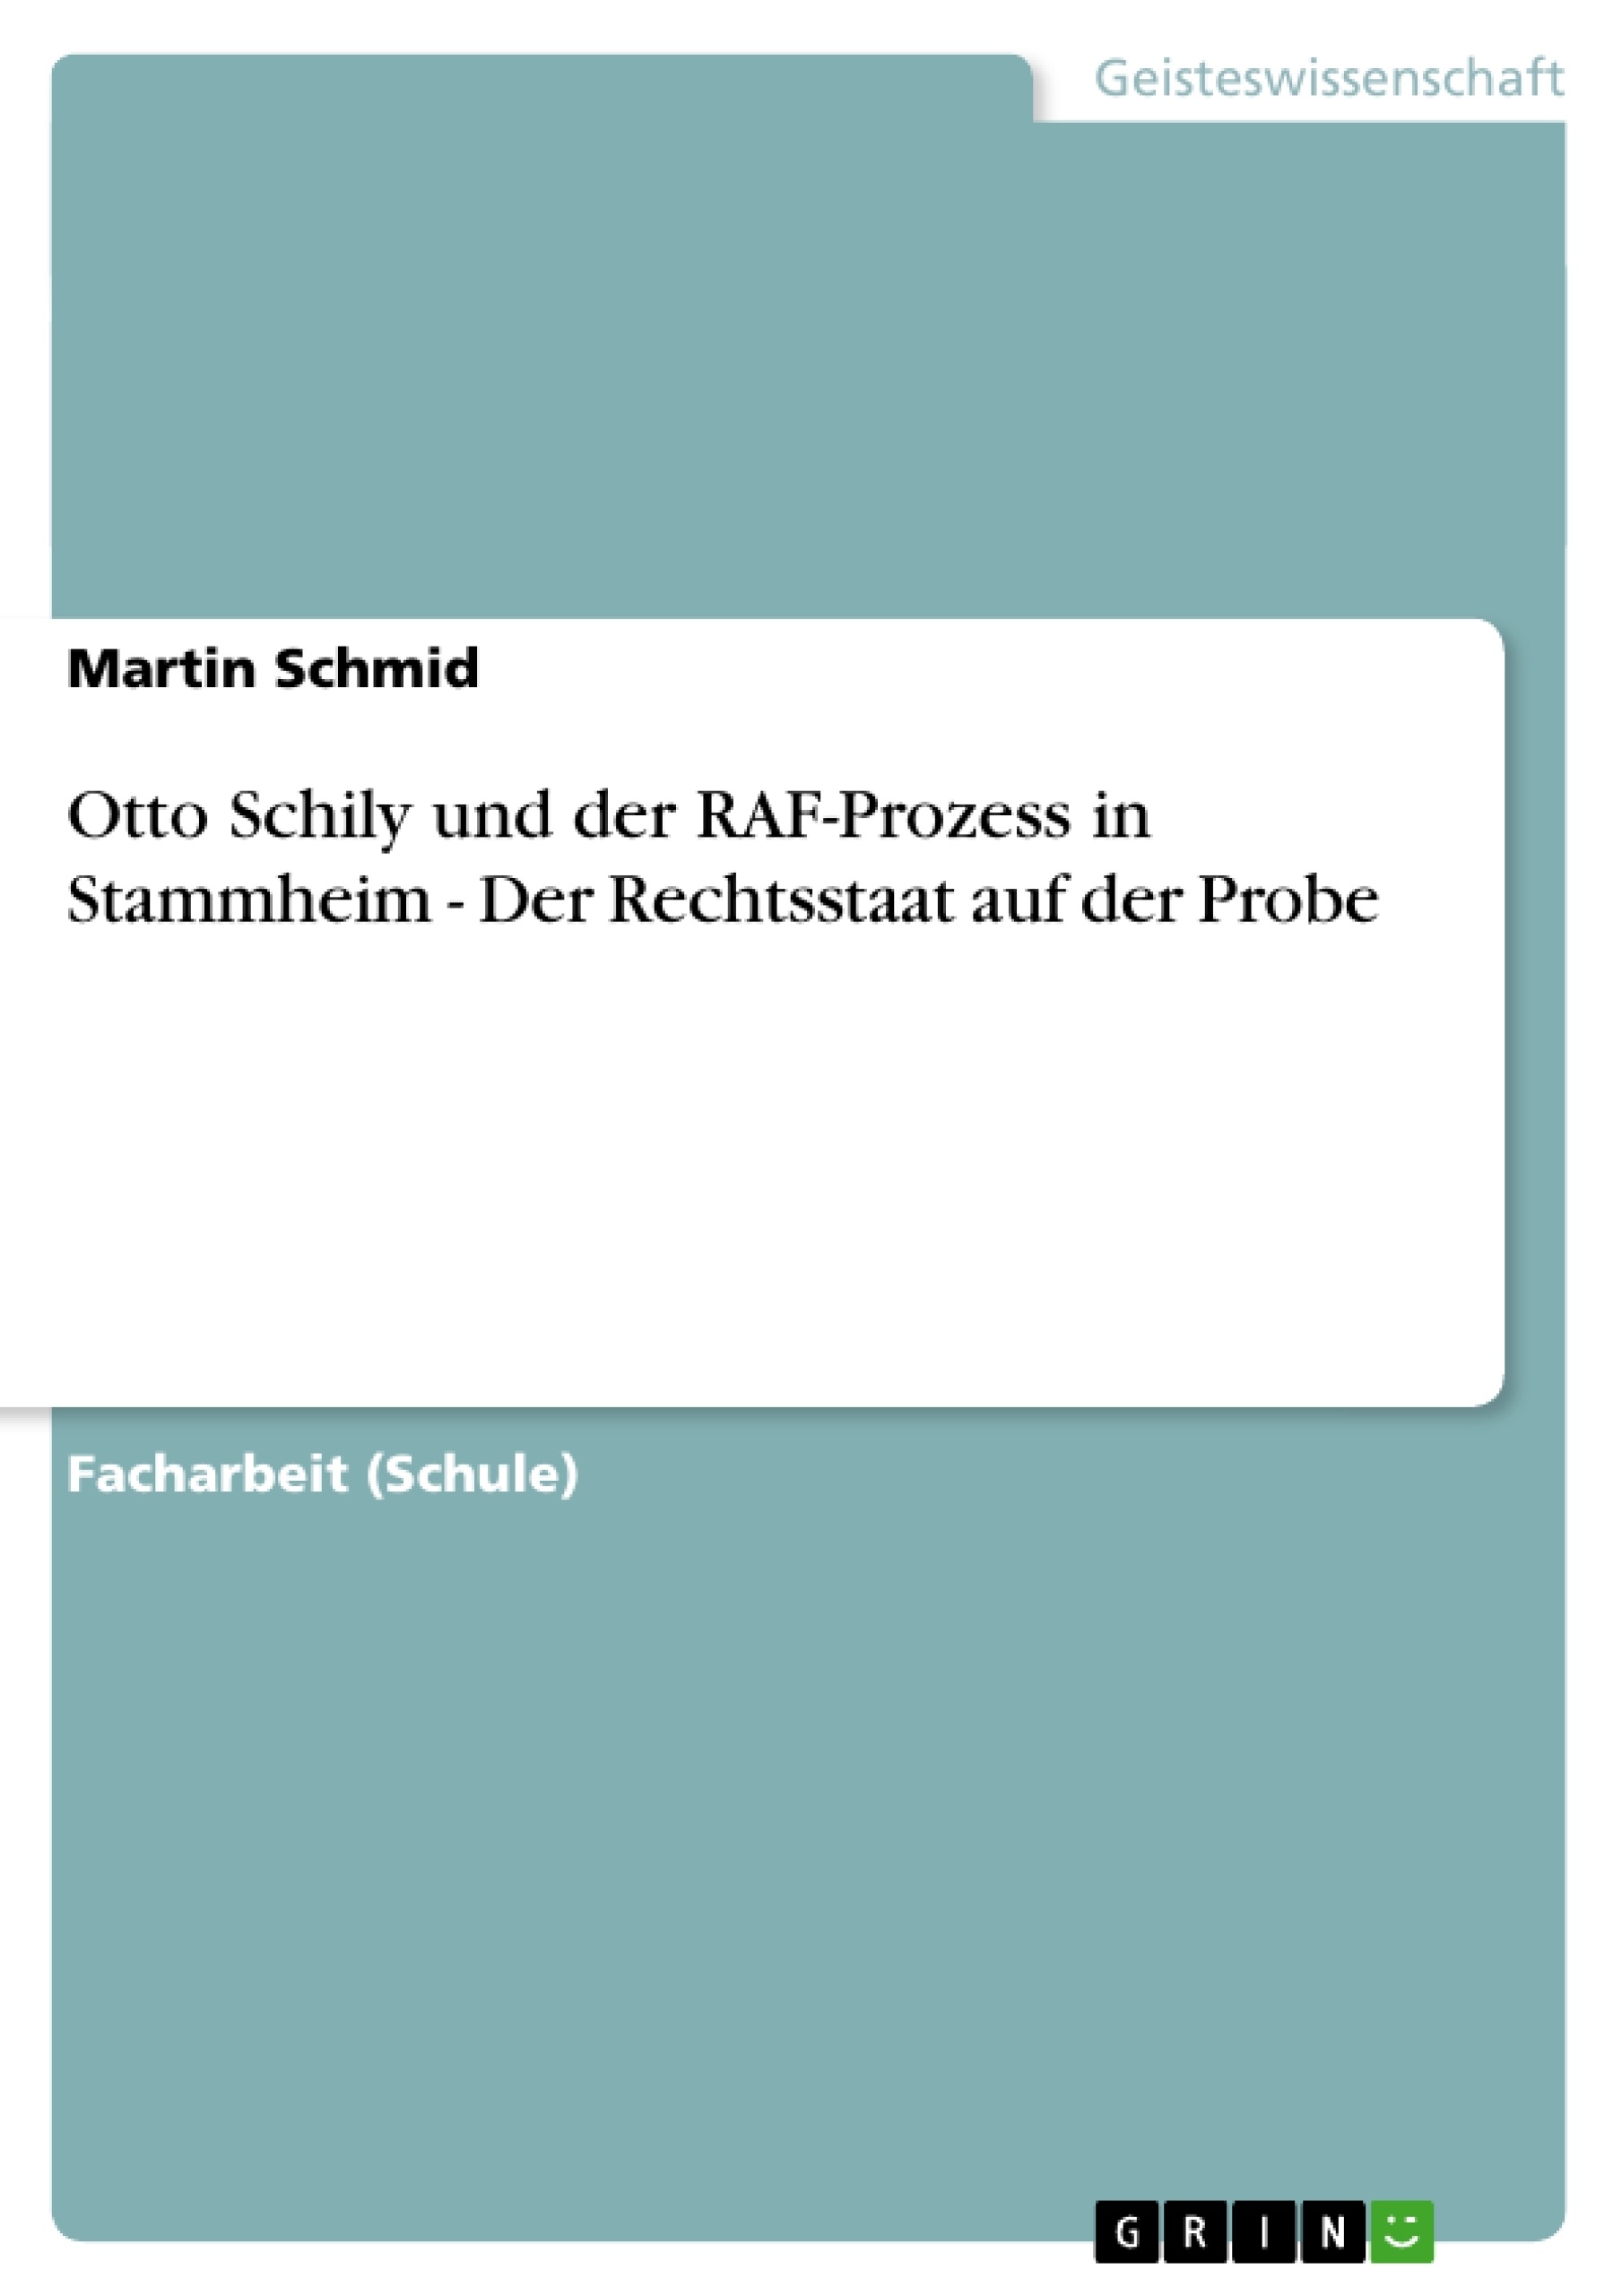 Title: Otto Schily und der RAF-Prozess in Stammheim - Der Rechtsstaat auf der Probe